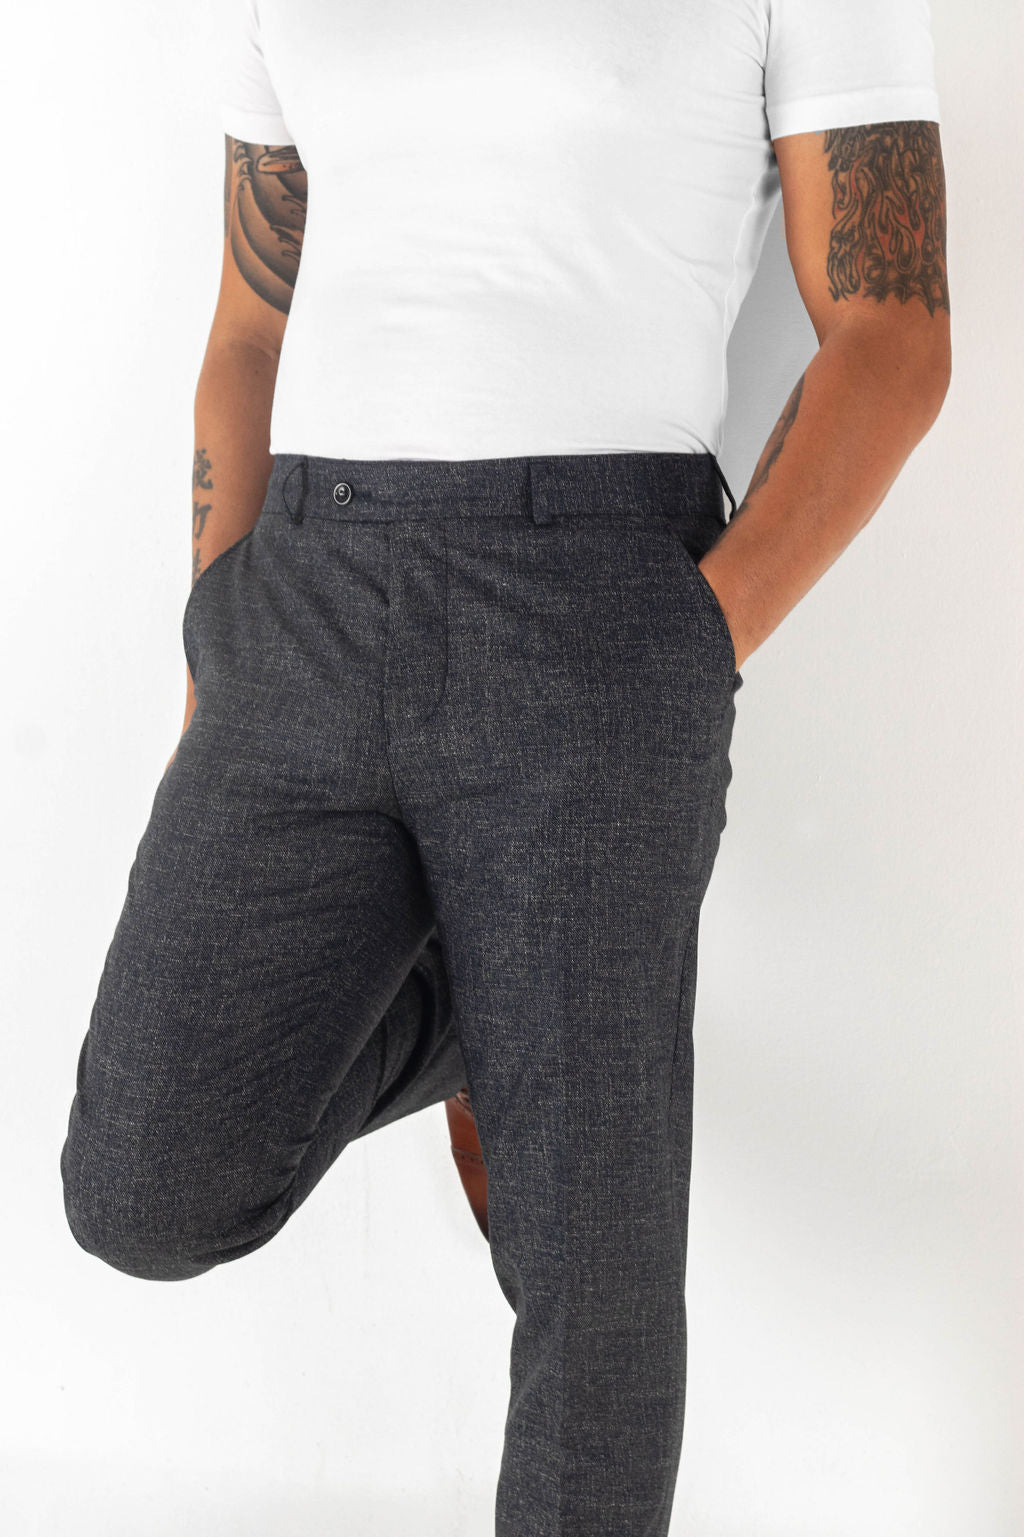 Unique Bargains Checked Dress Pants for Men's Button Closure Flat Front  Business Plaid Pattern Trousers